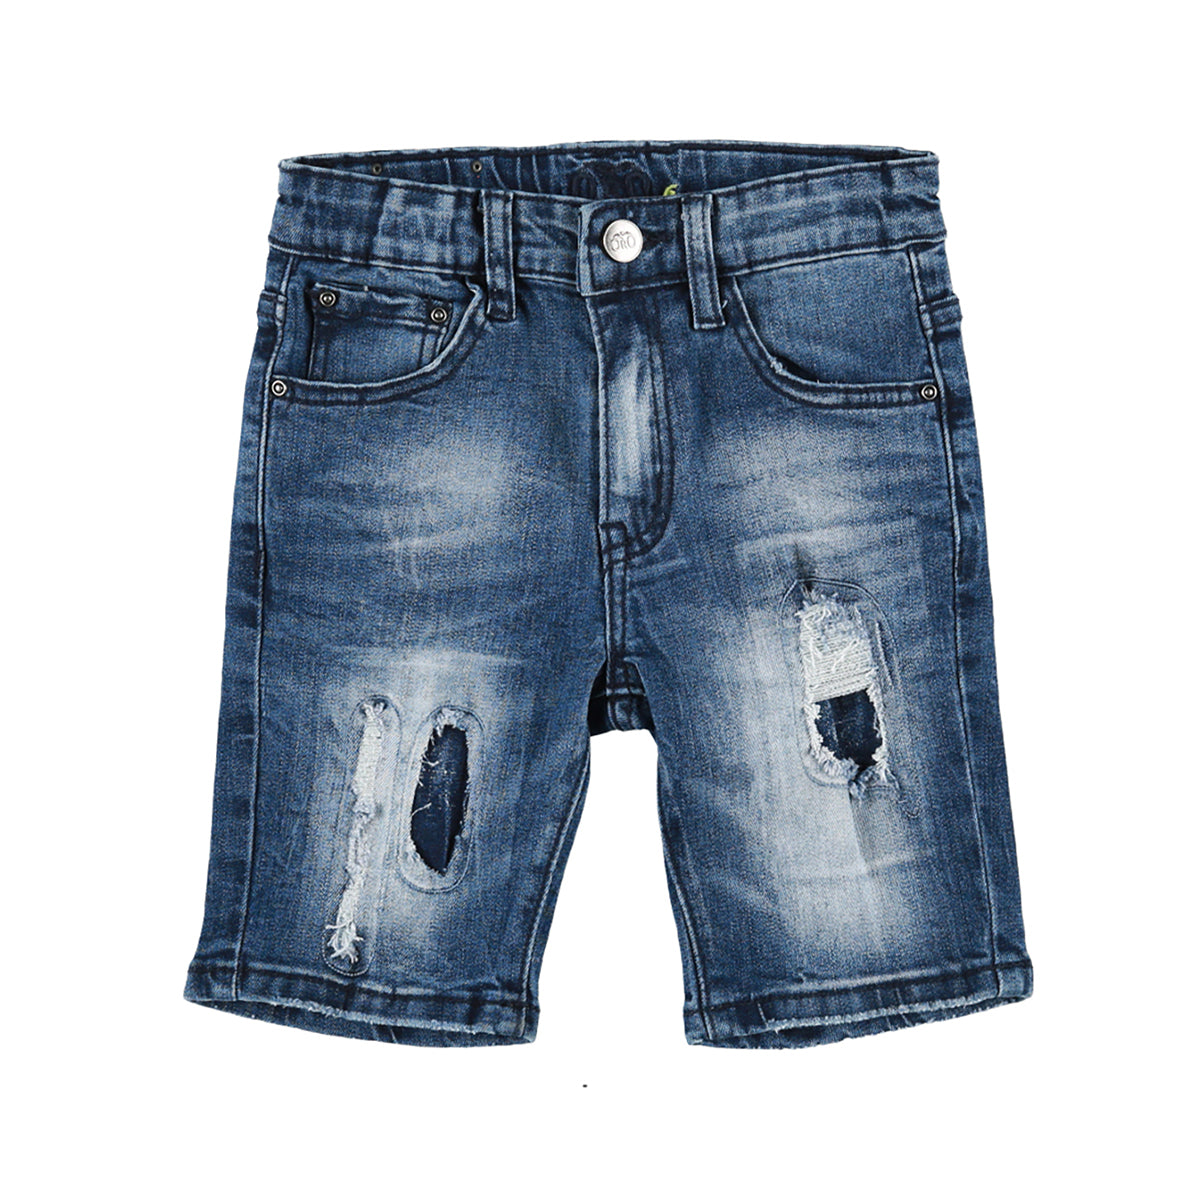 מכנסי ג'ינס קצר ORO לילדים כחול כהה